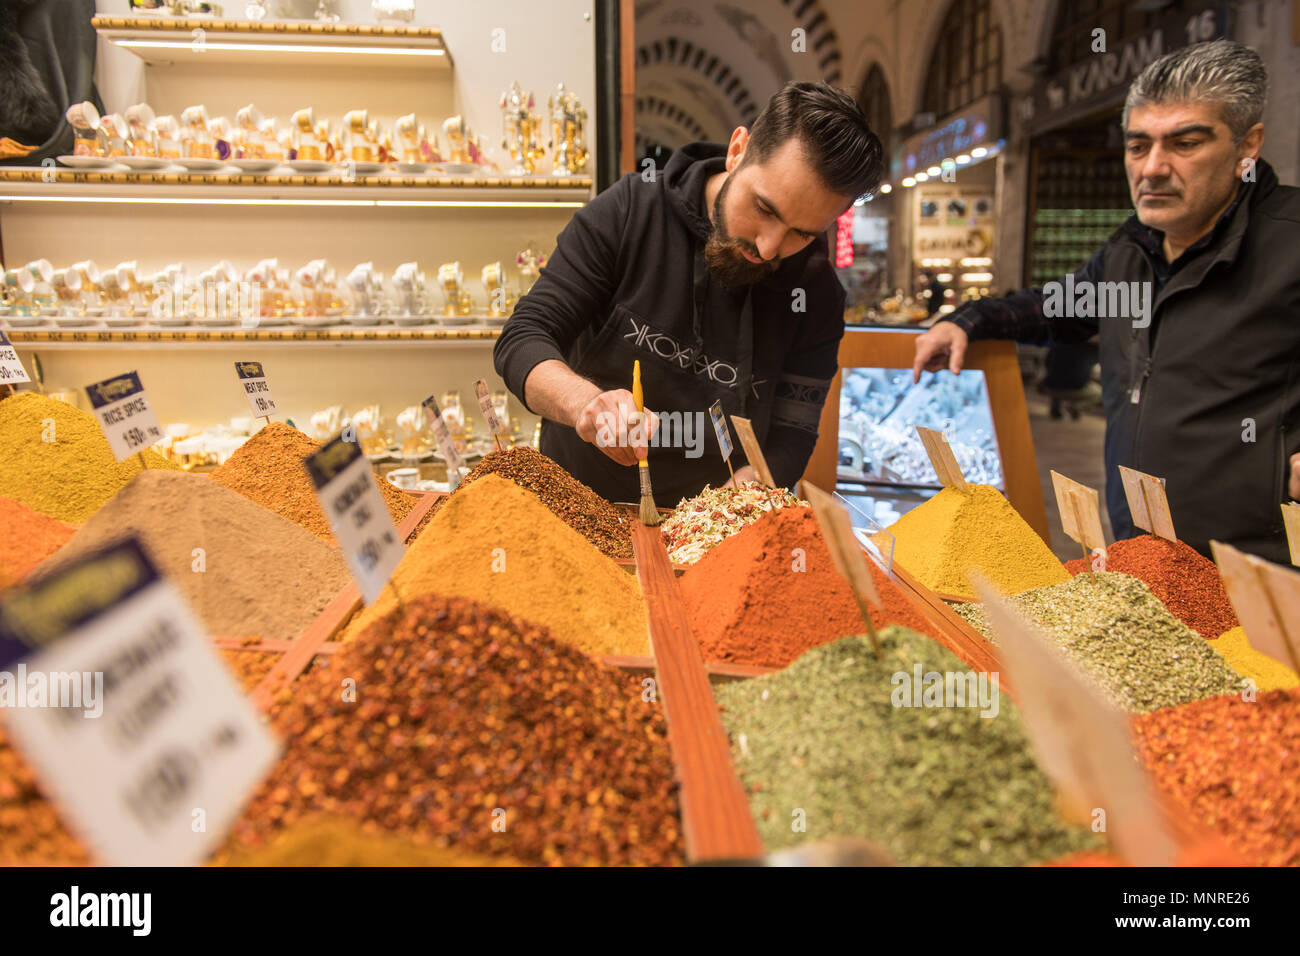 Männliche Kaufmann verwendet Pinsel überschüssige Gewürze aus der Container ordentlich wie ein erwachsener Mann sieht ihm in Istanbul, Spice Bazaar in der Türkei Stockfoto